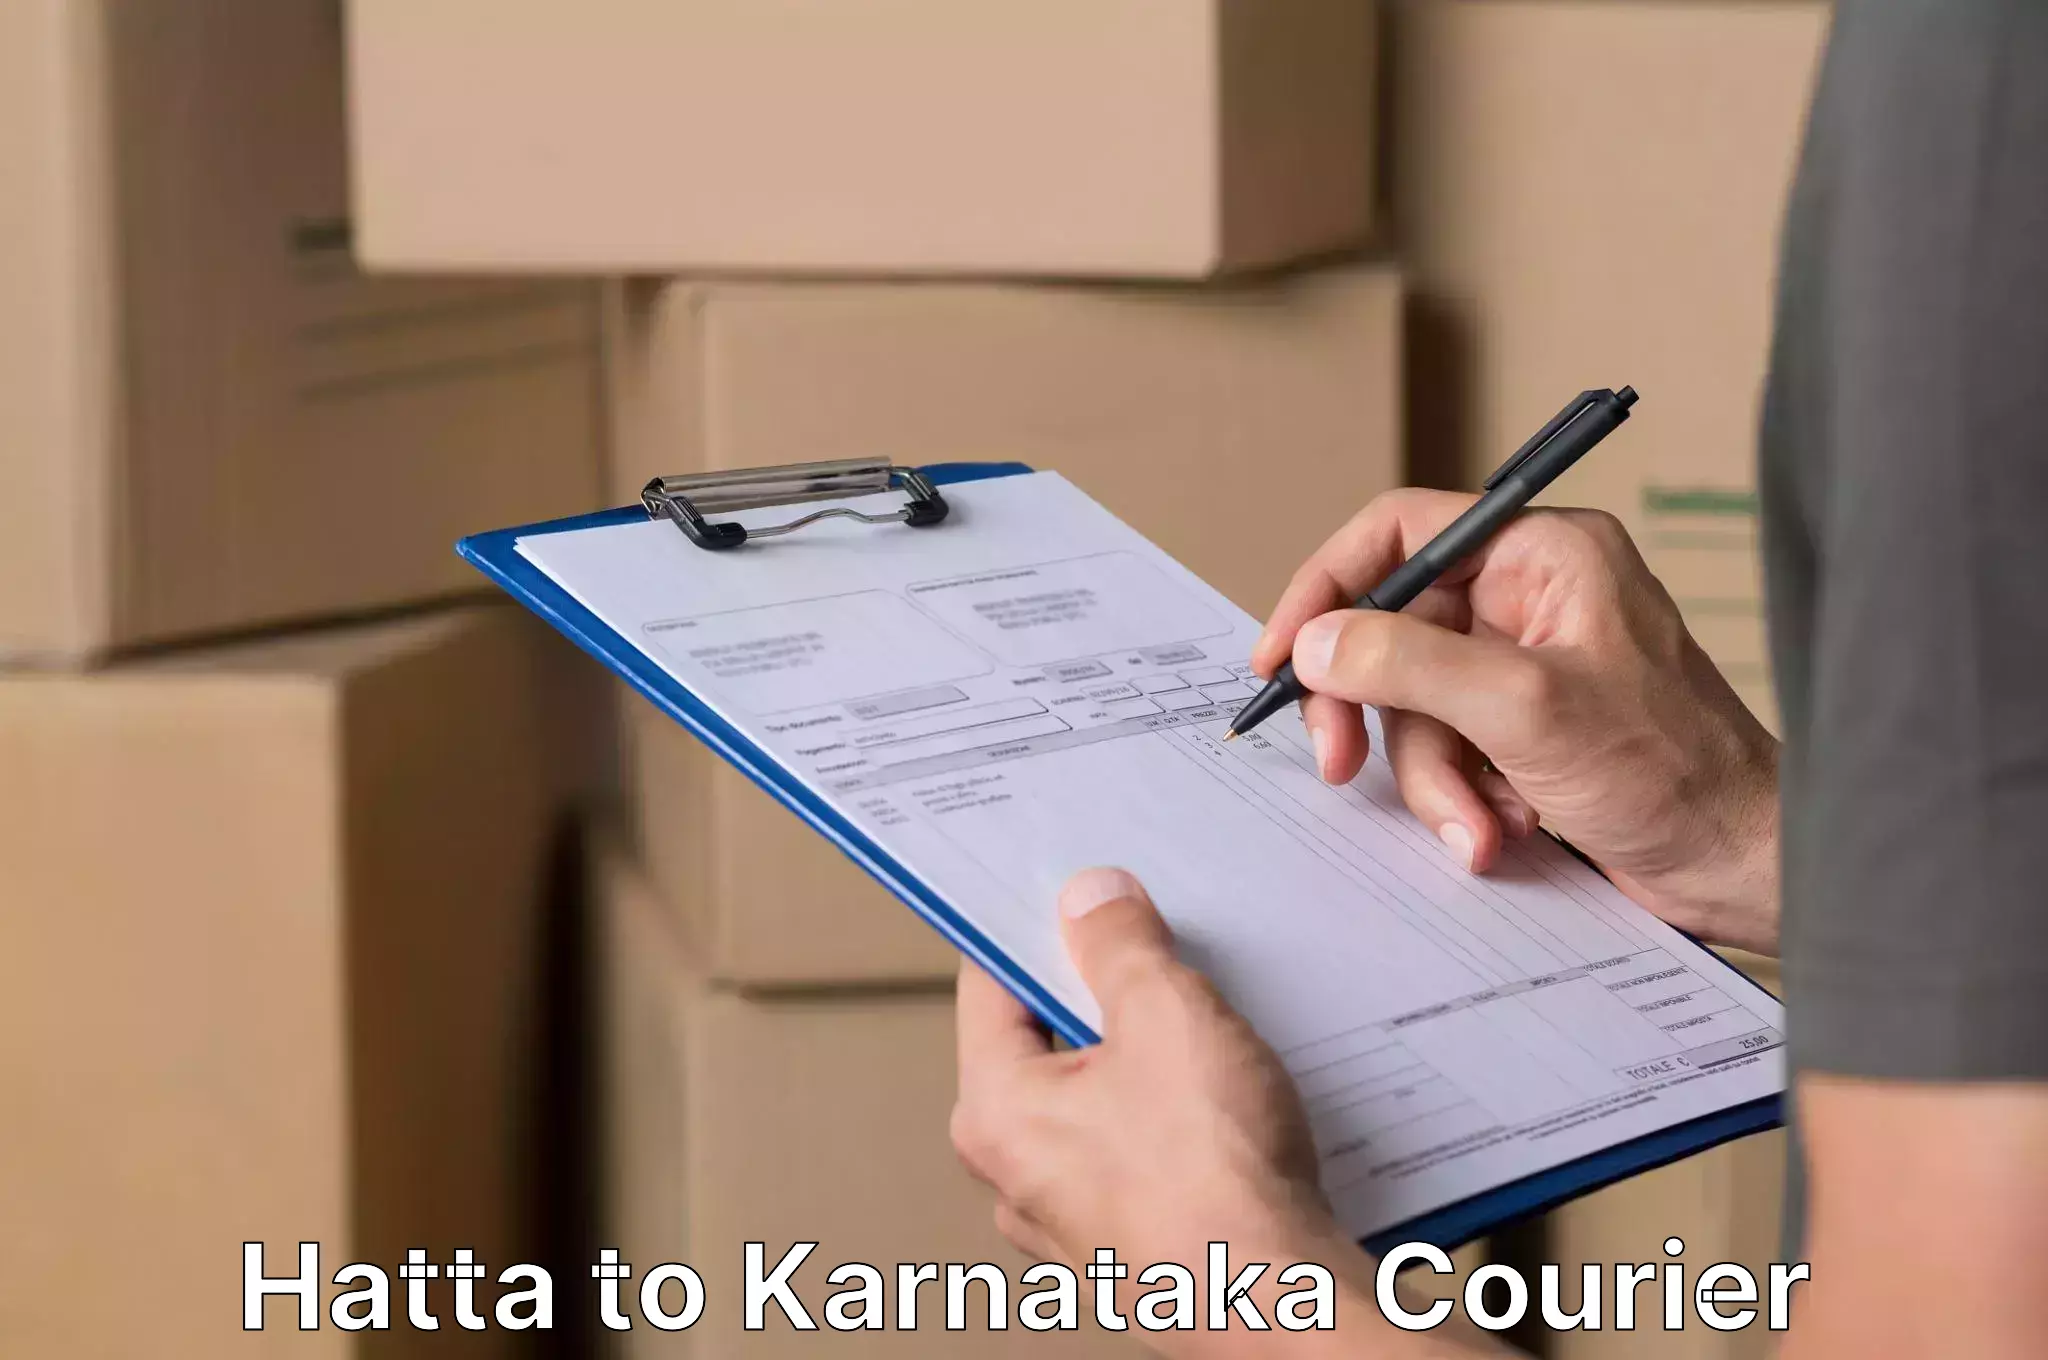 Reliable movers Hatta to Karnataka